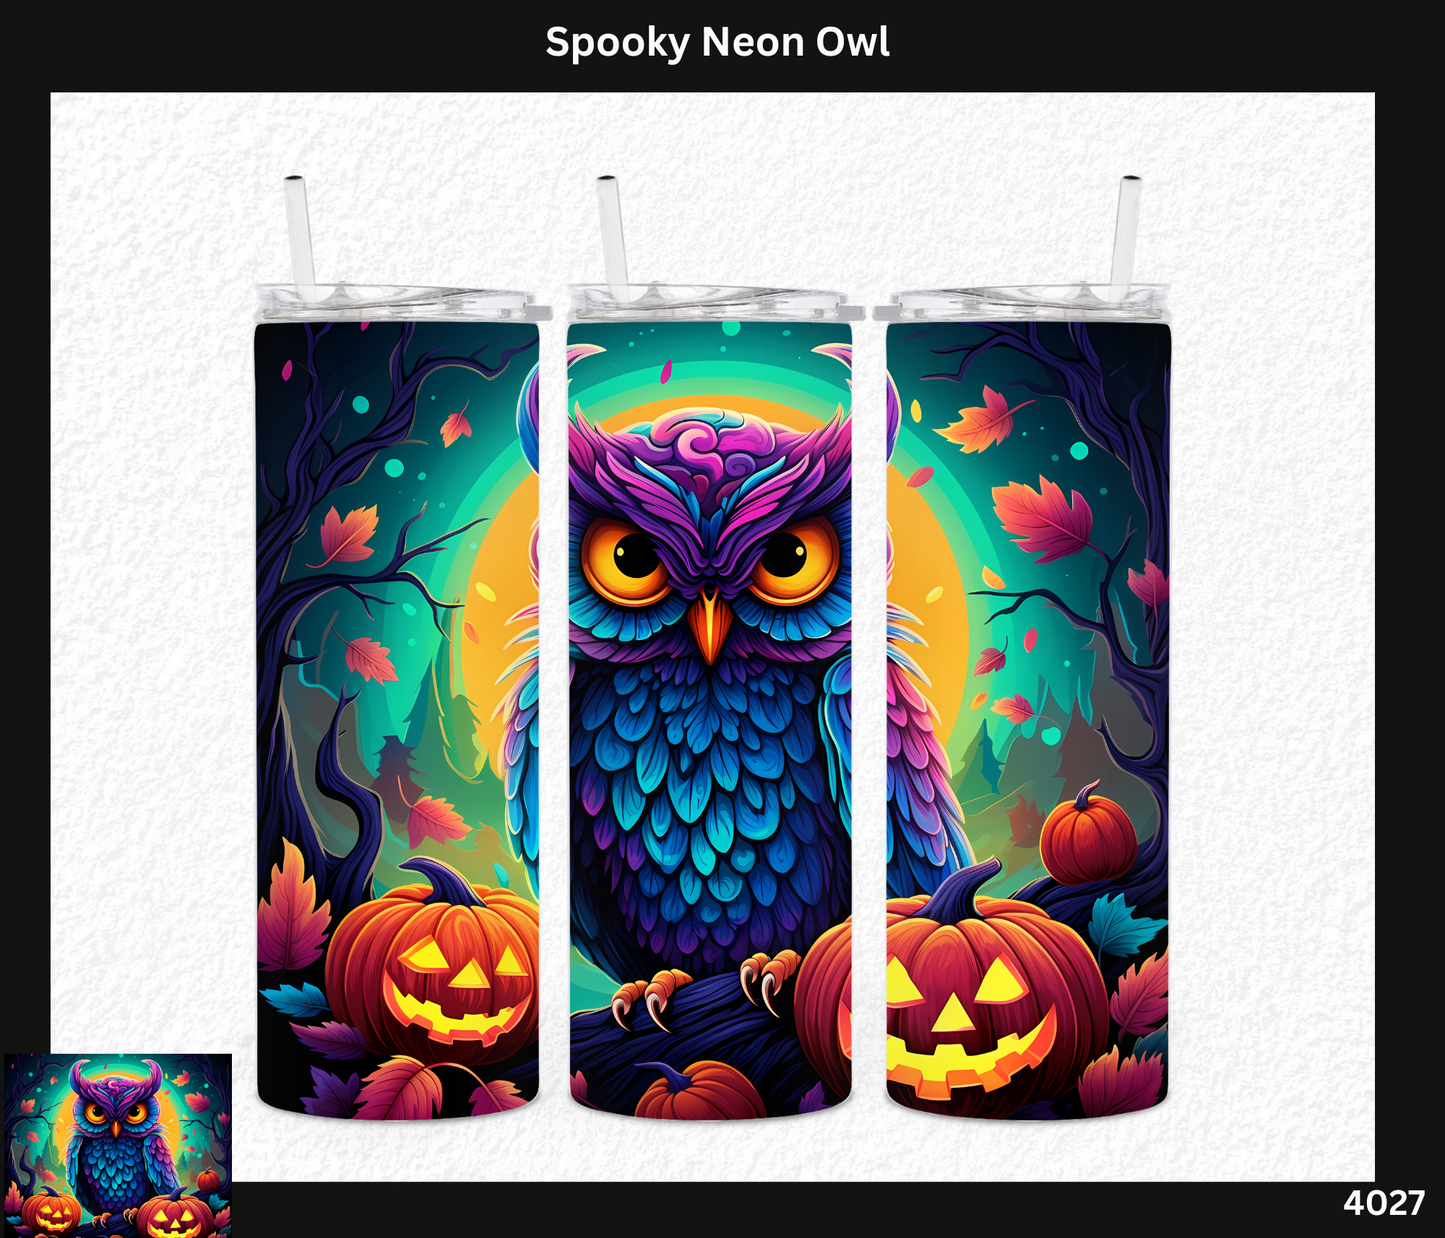 Spooky Neon Owl